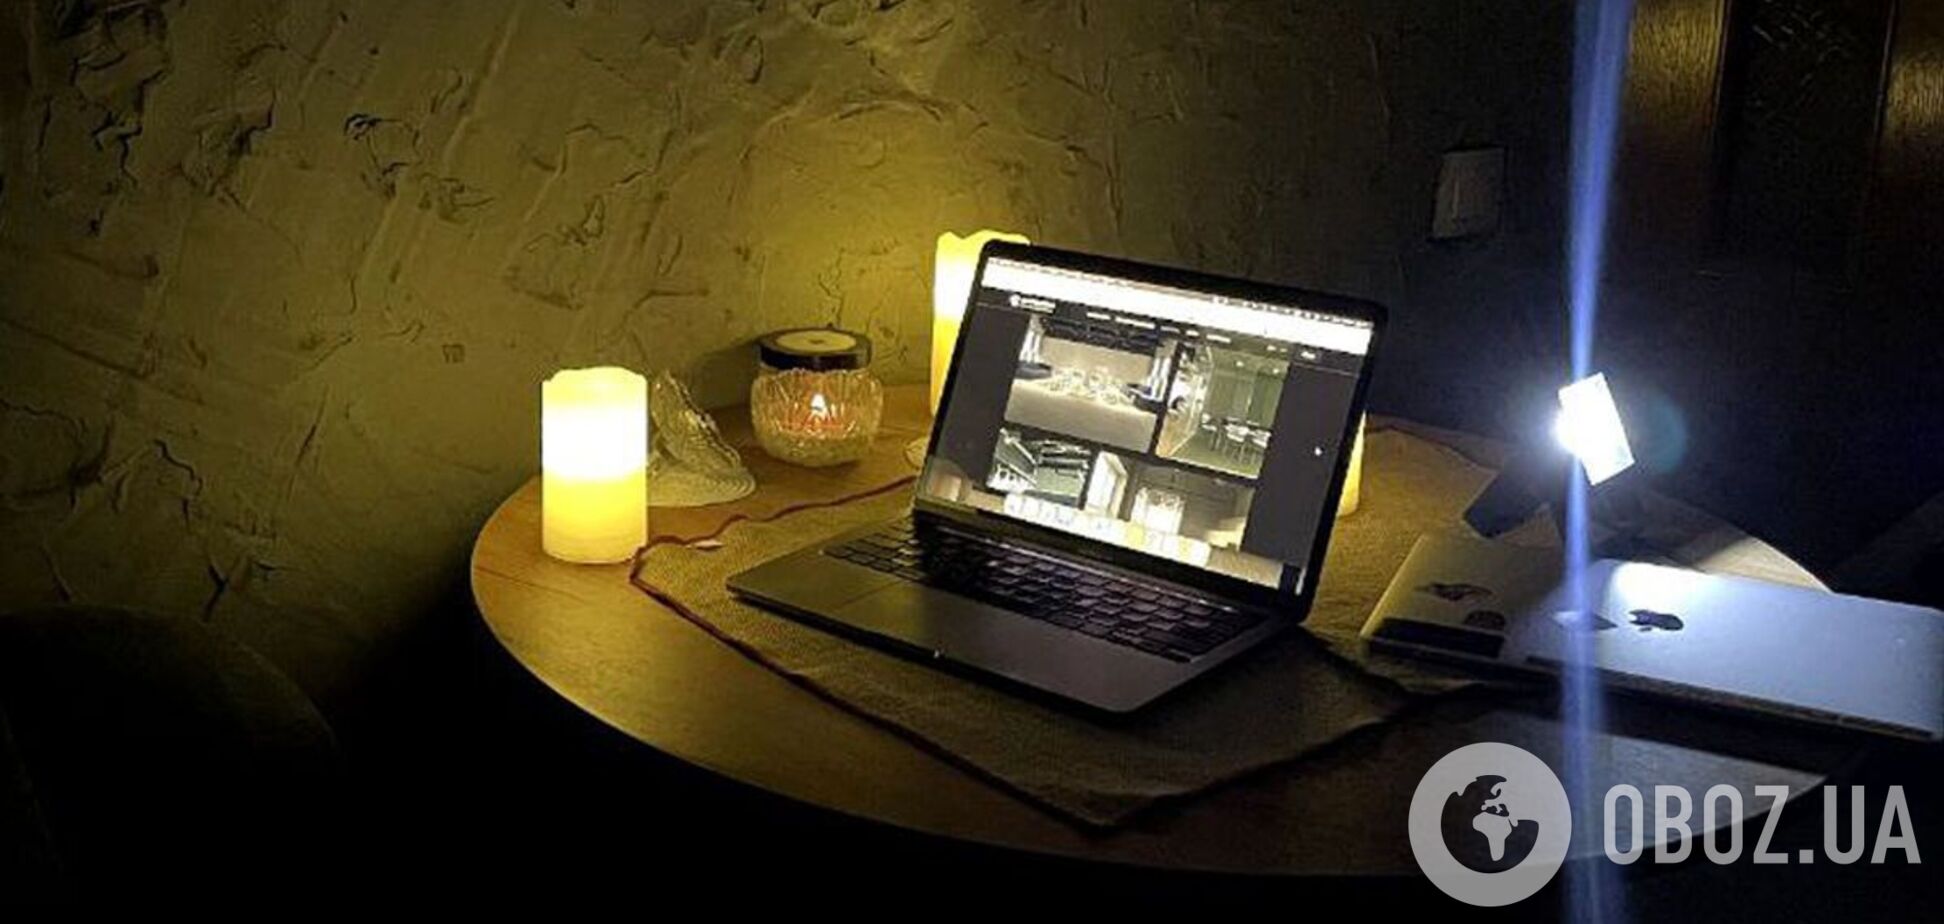 Топ-5 эффективных способов оставаться онлайн без света